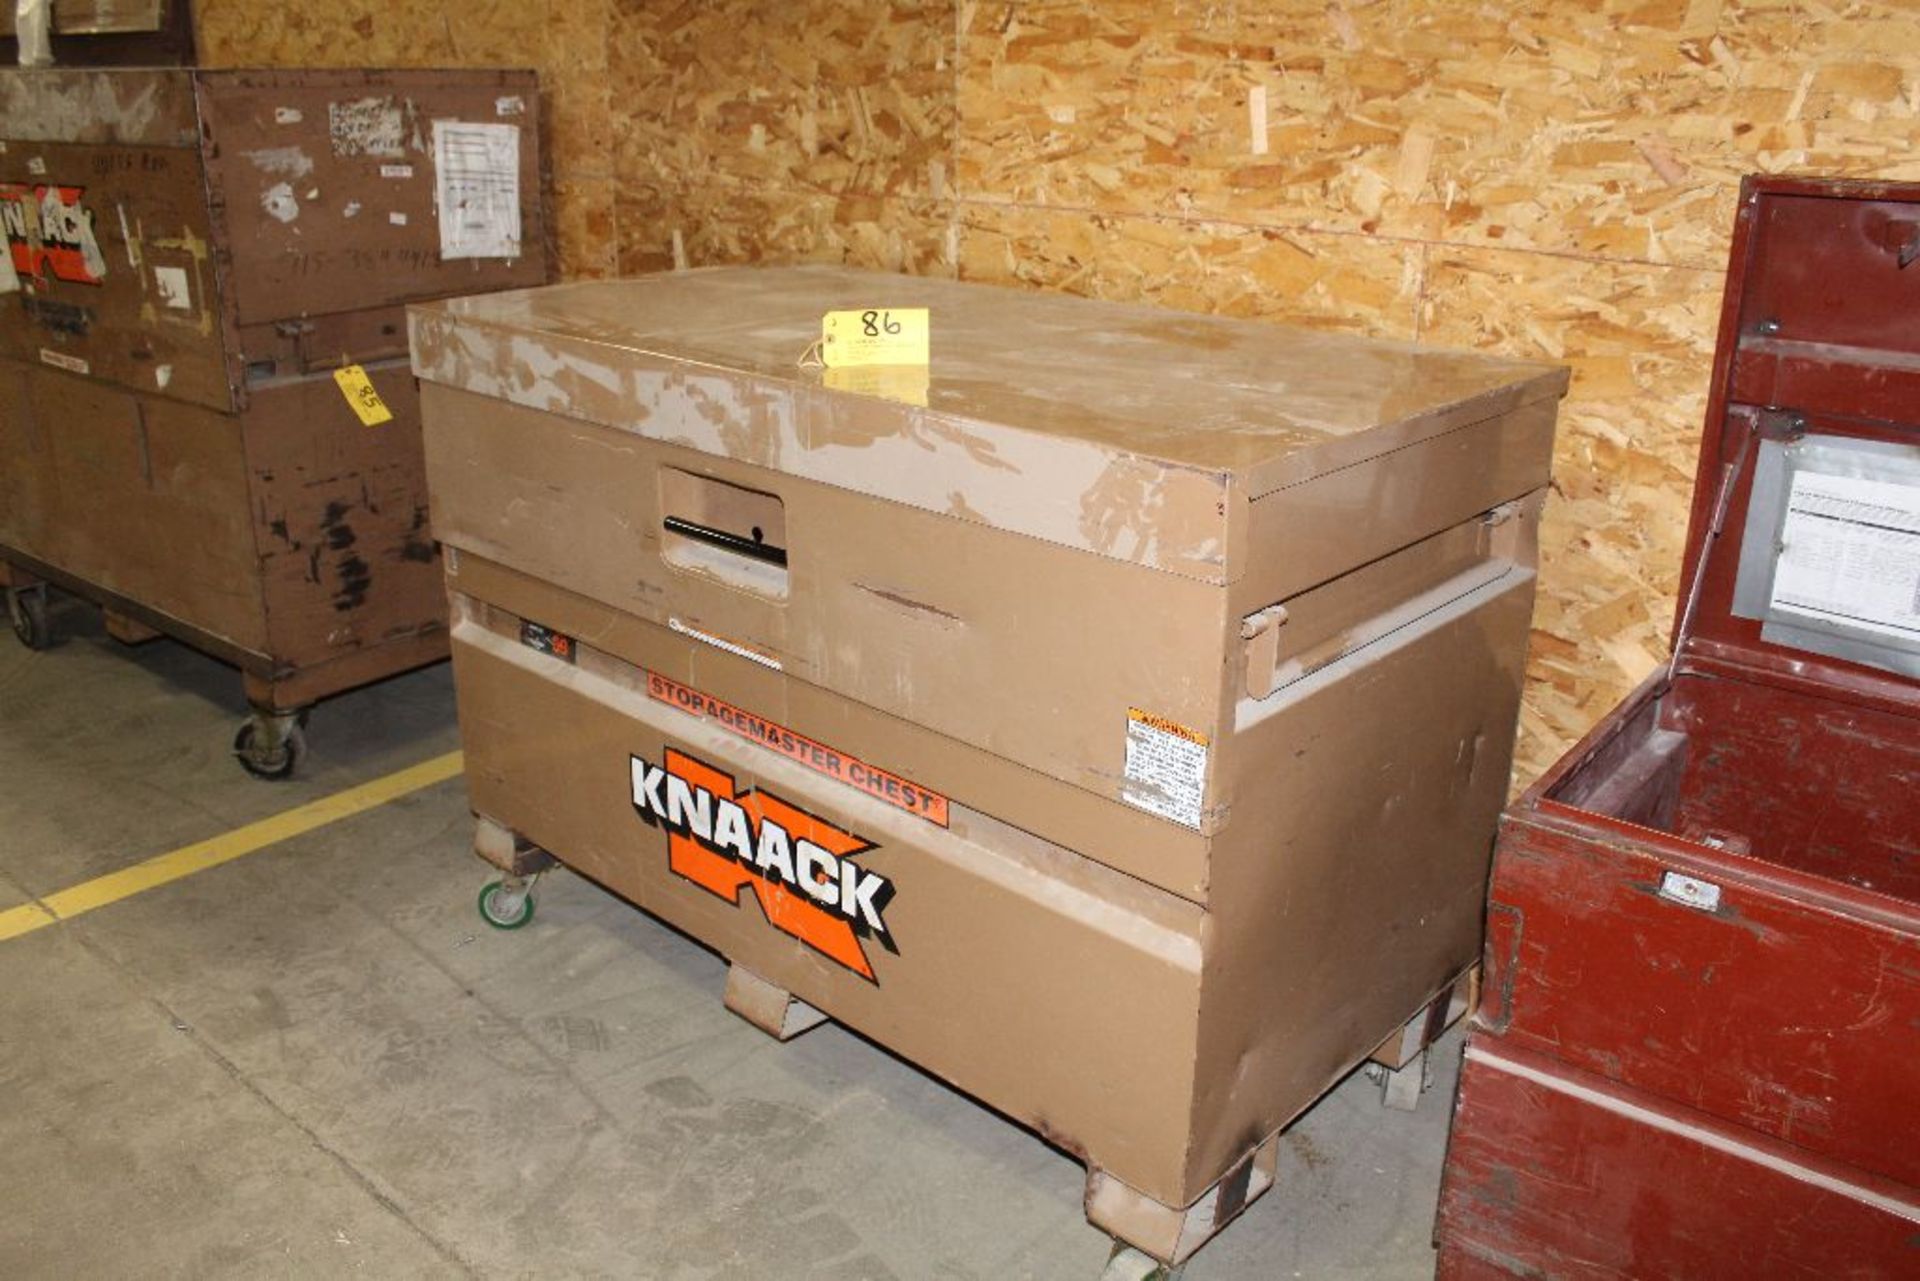 Knaack storage chest.